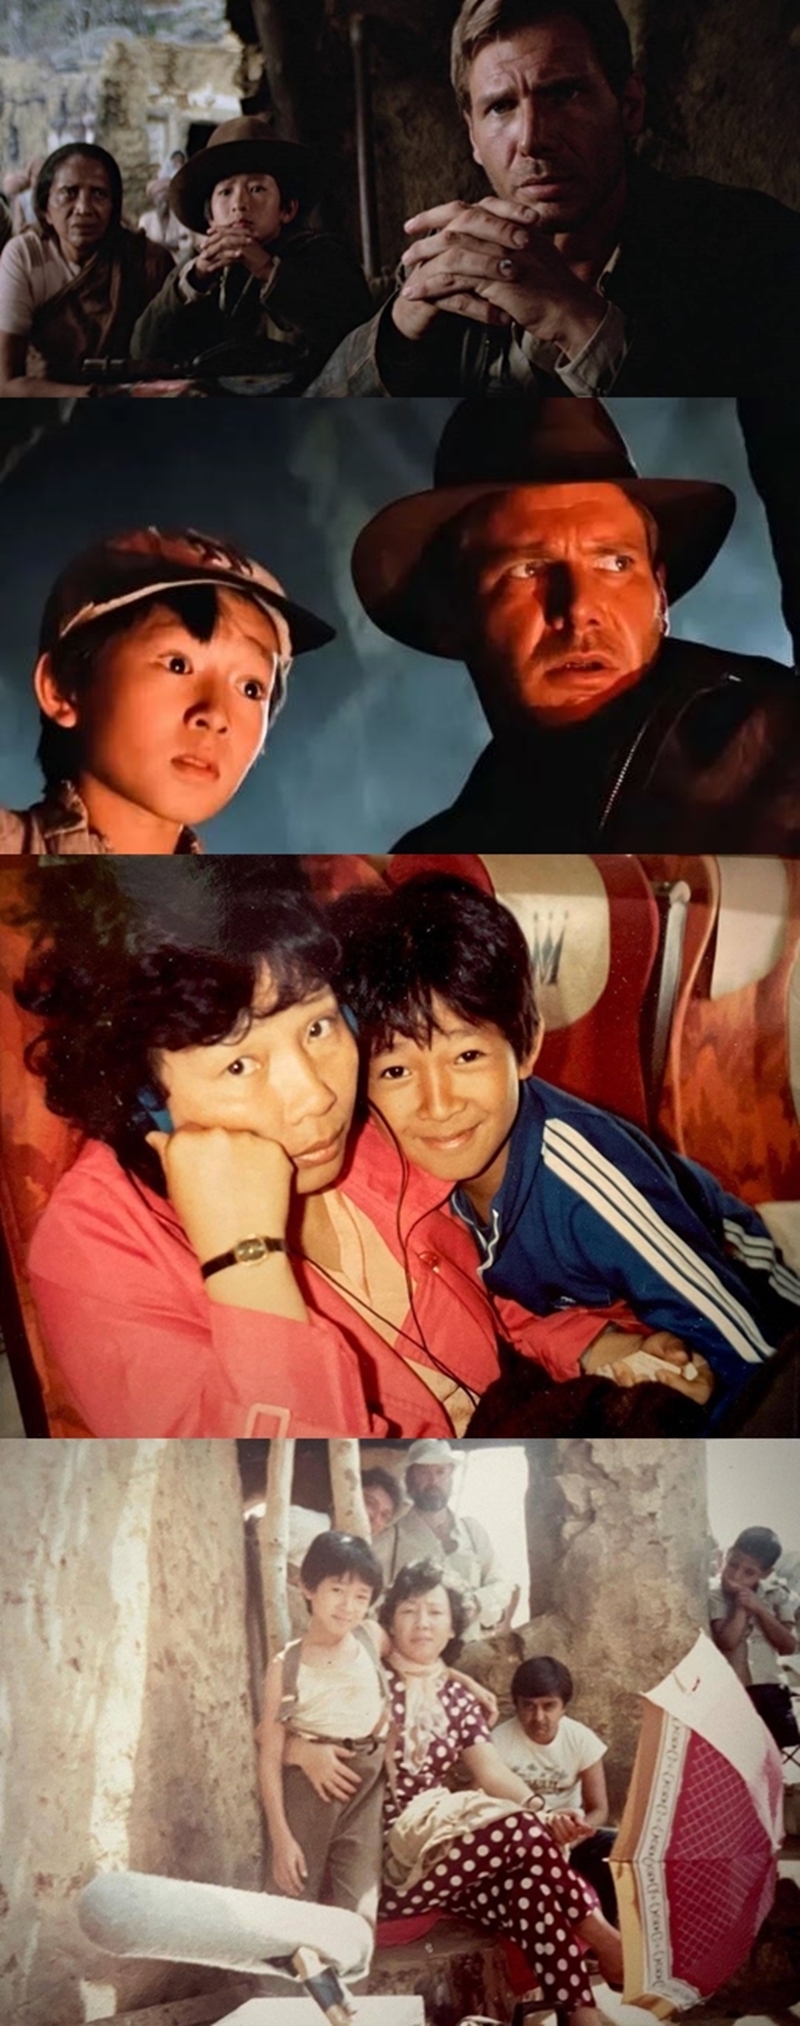 關繼威12歲時曾演出過電影《魔宮傳奇》